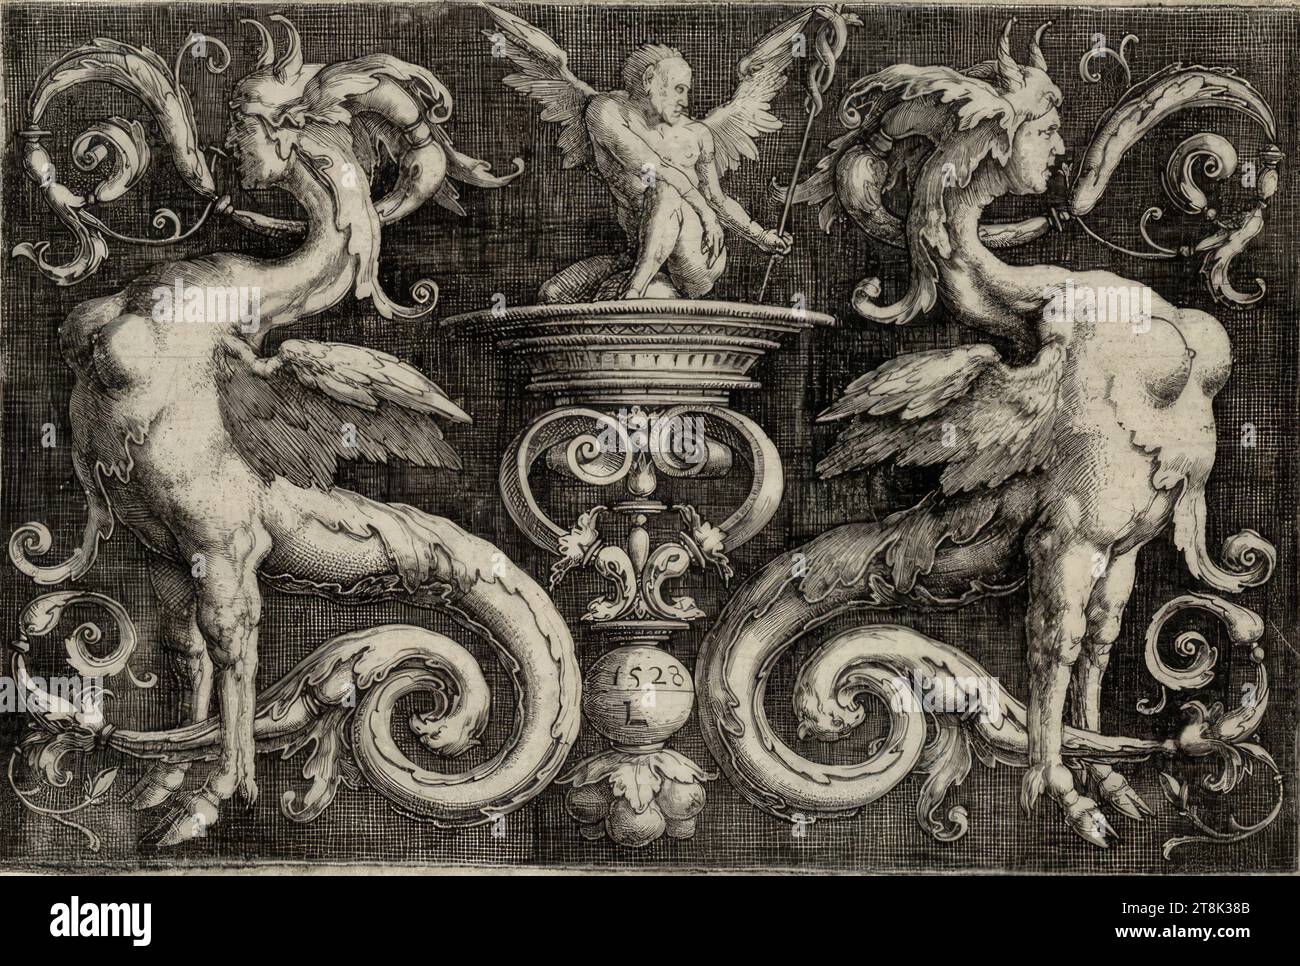 Ornement avec deux sphinx et un homme ailé, Lucas Hugensz. Van Leyden, Leiden 1494 - 1533 Leiden, 1528, tirage, gravure sur cuivre, planche : 8 x 11,8 cm, selon New Hollstein Banque D'Images